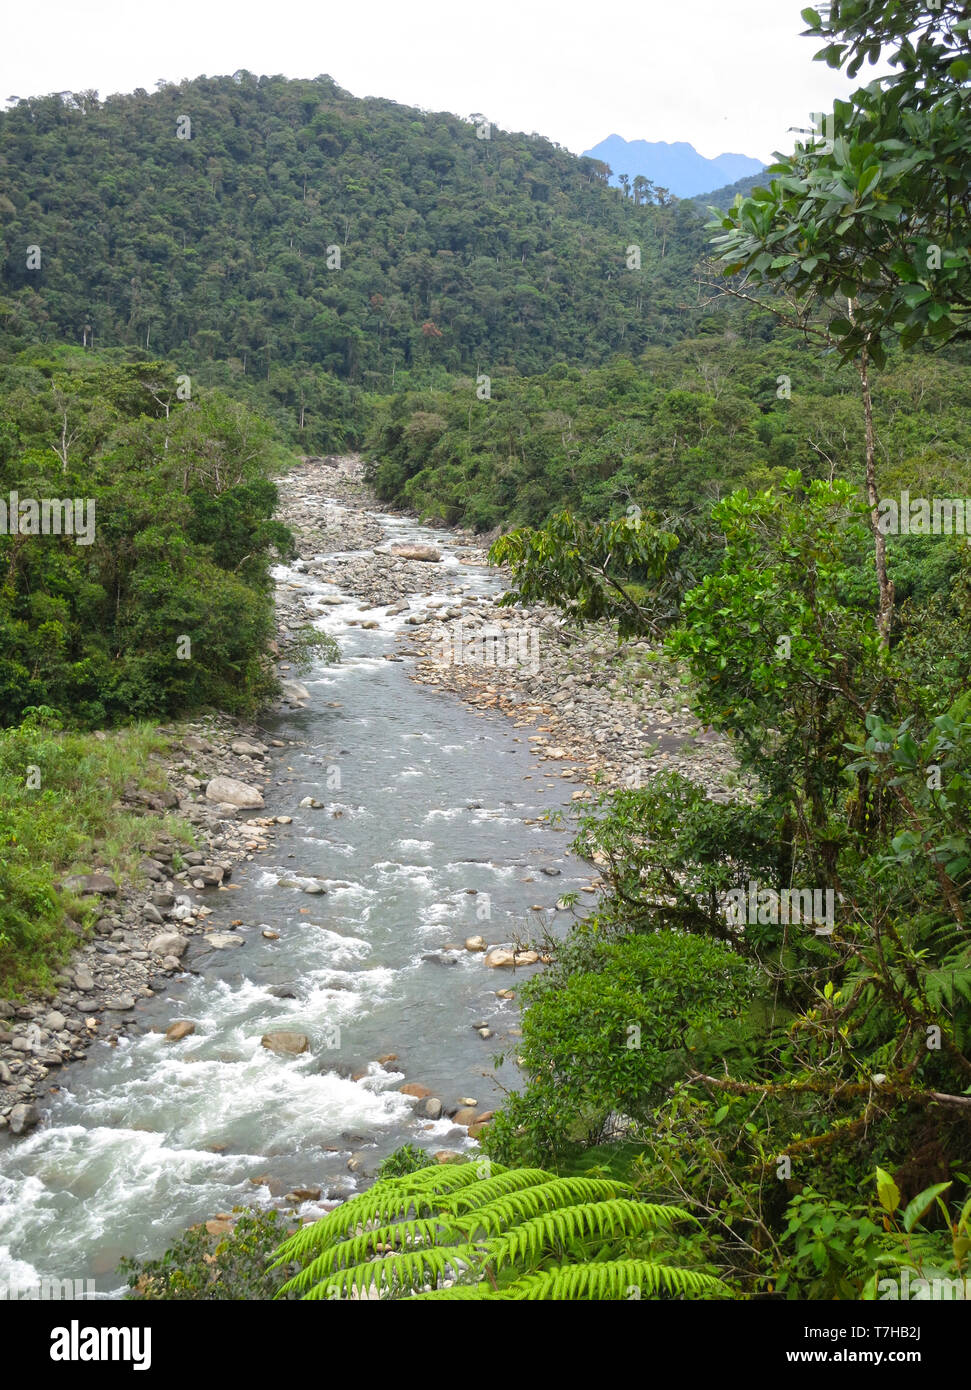 Rivière qui coule avec des pierres dans la partie inférieure de la route de Manu sur côté est la pente de la Cordillère des Andes au Pérou. Pentes boisées de part et d'autre. Banque D'Images